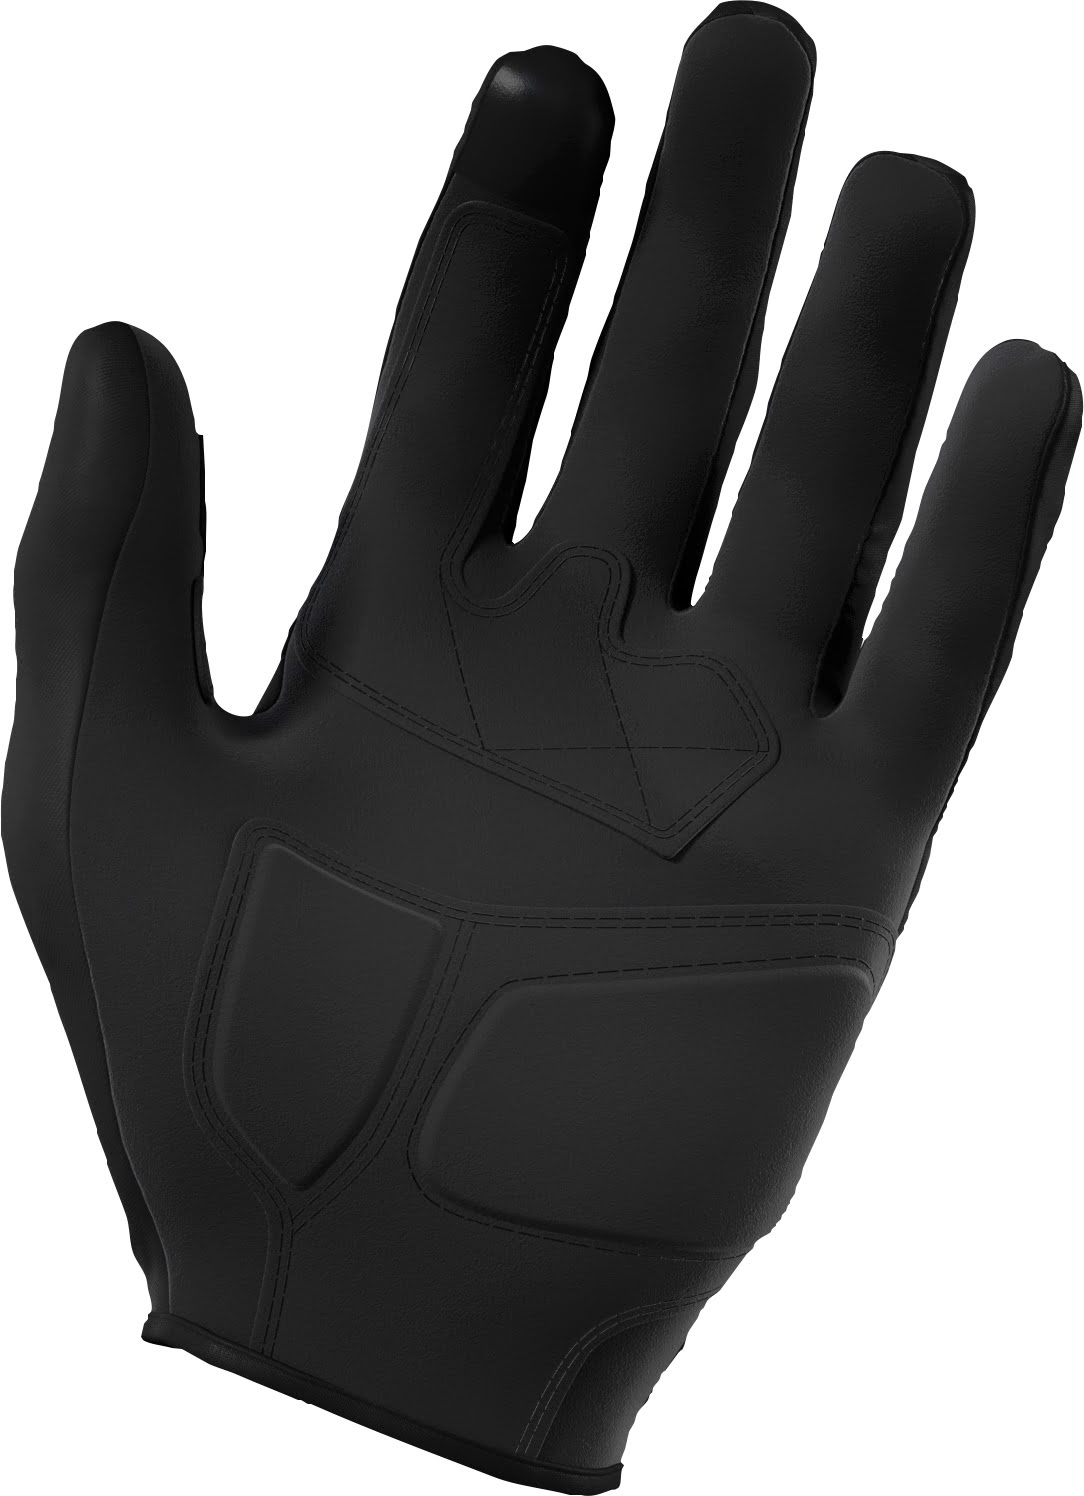 Gloves TRAINER CE 3.0 Black SHOT 